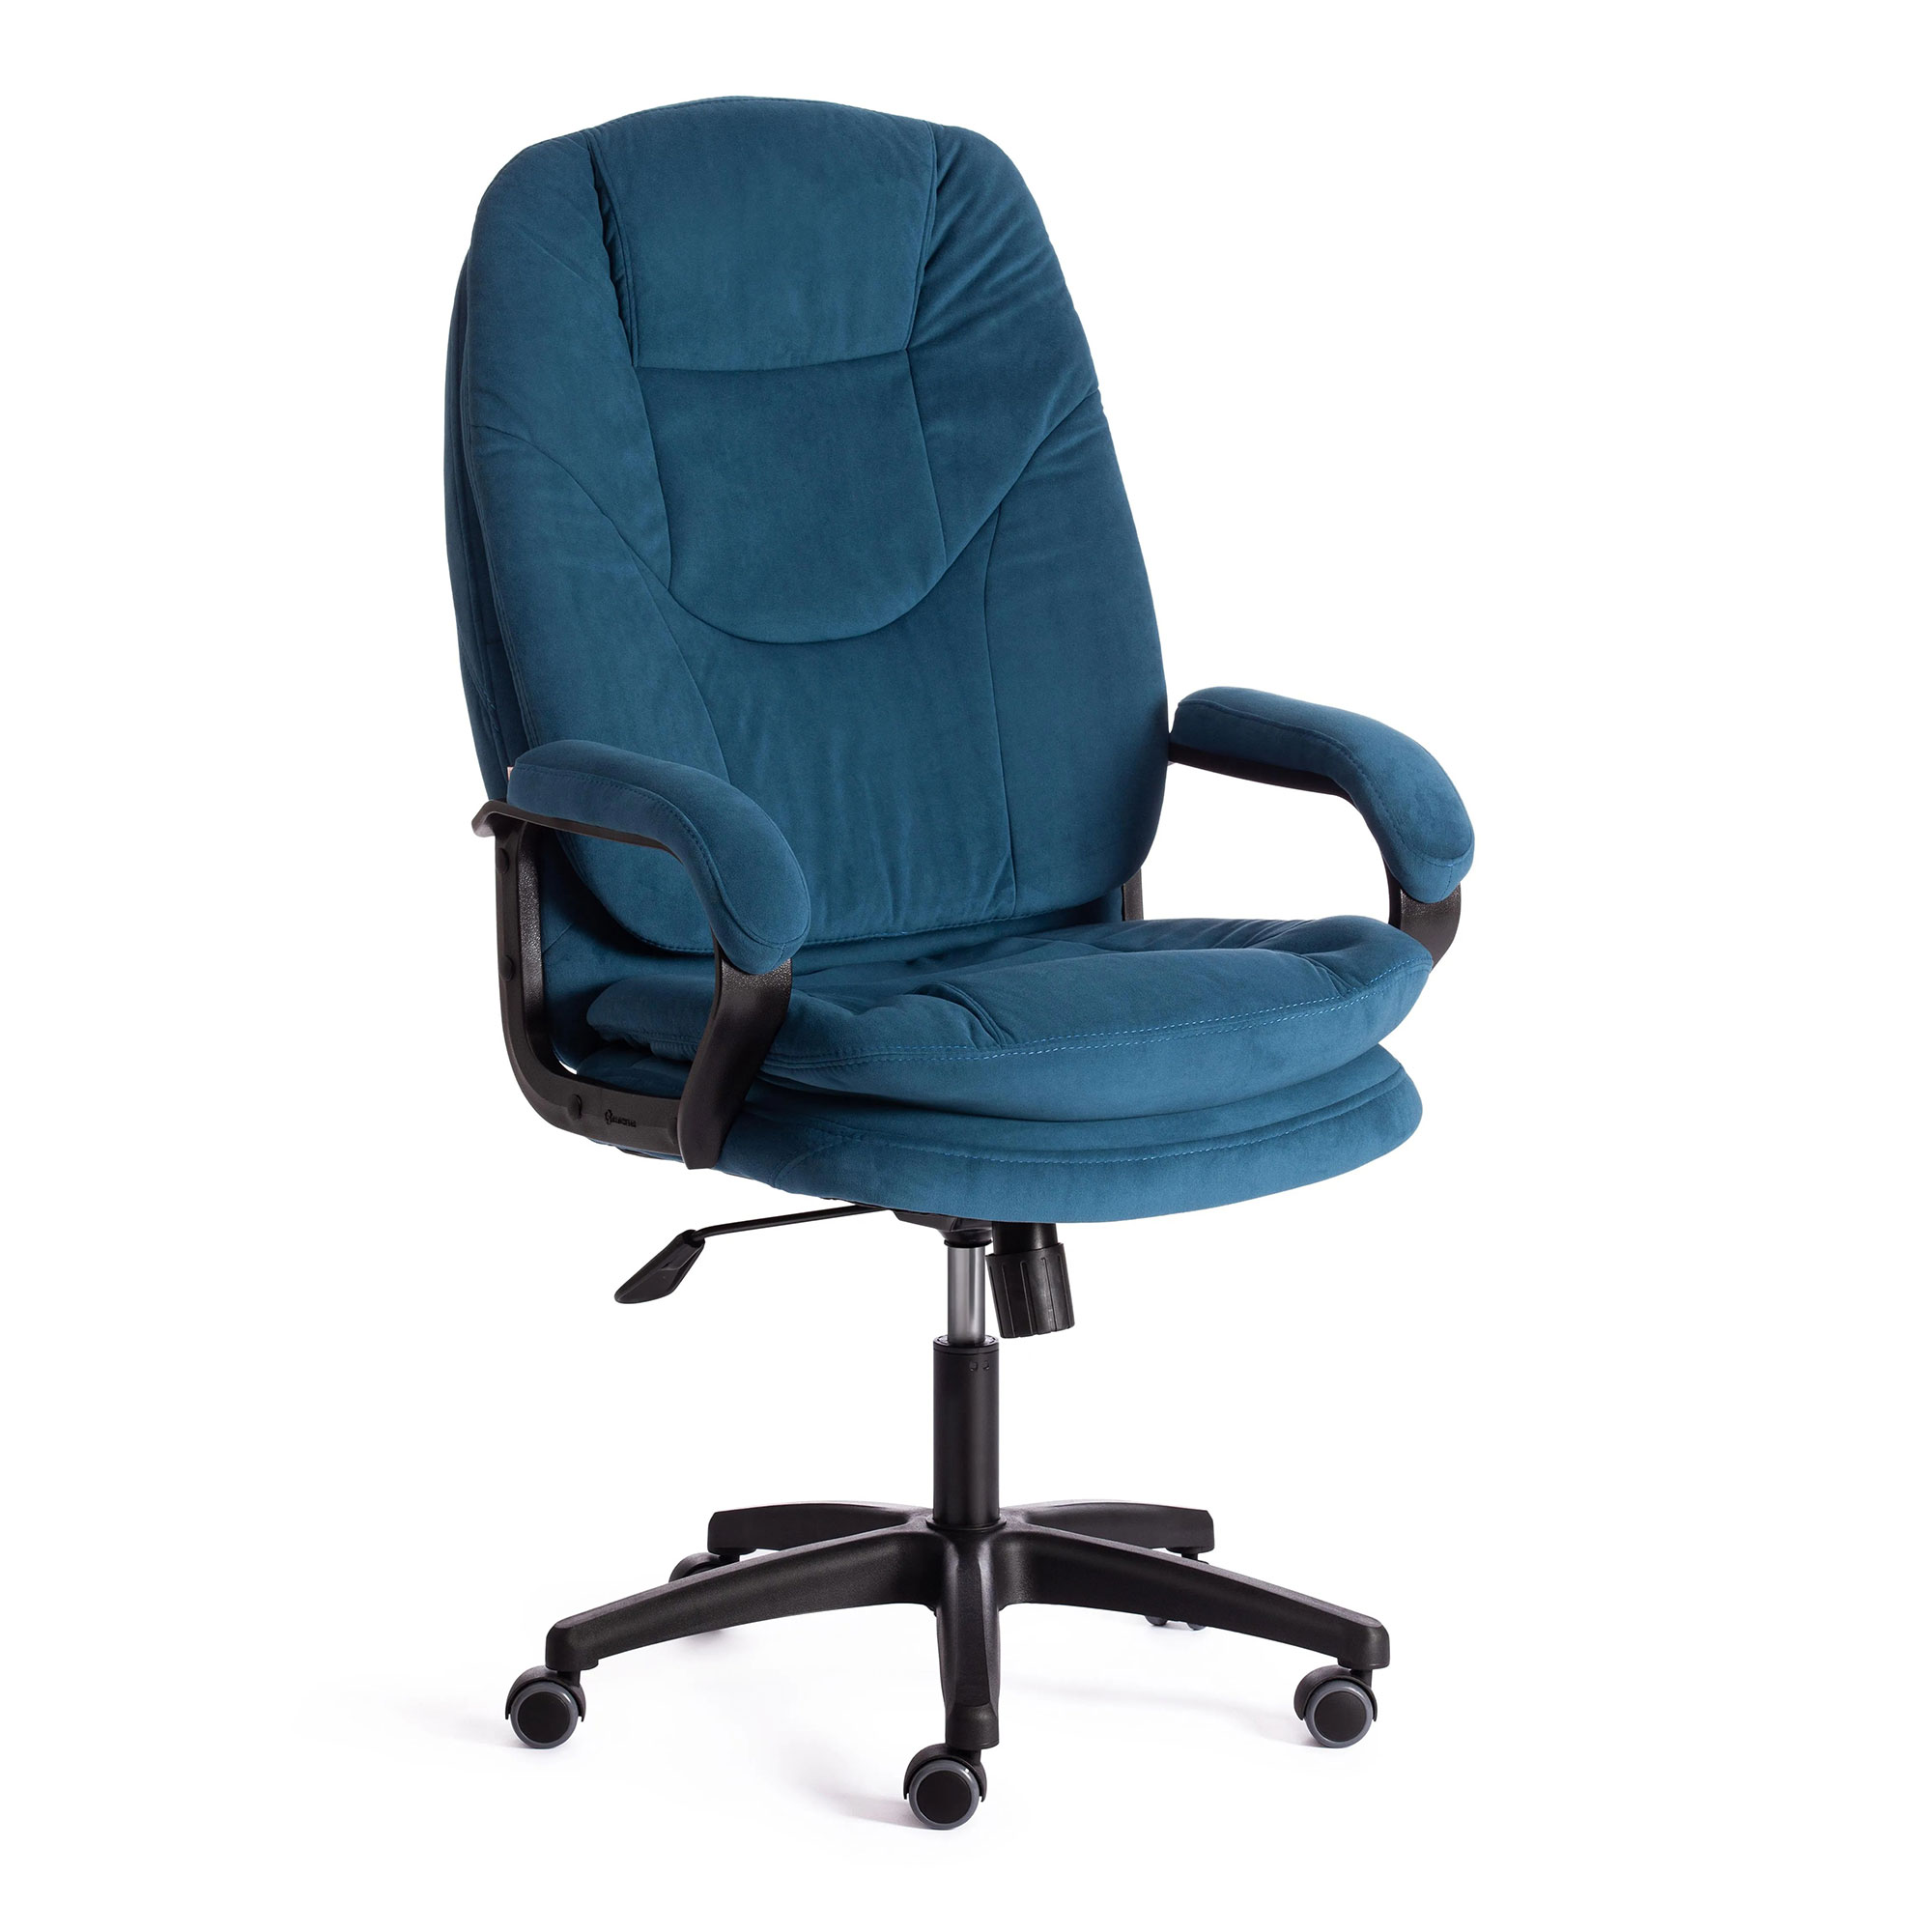 Компьютерное кресло TC Comfort синее 66х46х133 см (19387) компьютерное кресло tc comfort бежевое 66х46х133 см 19378